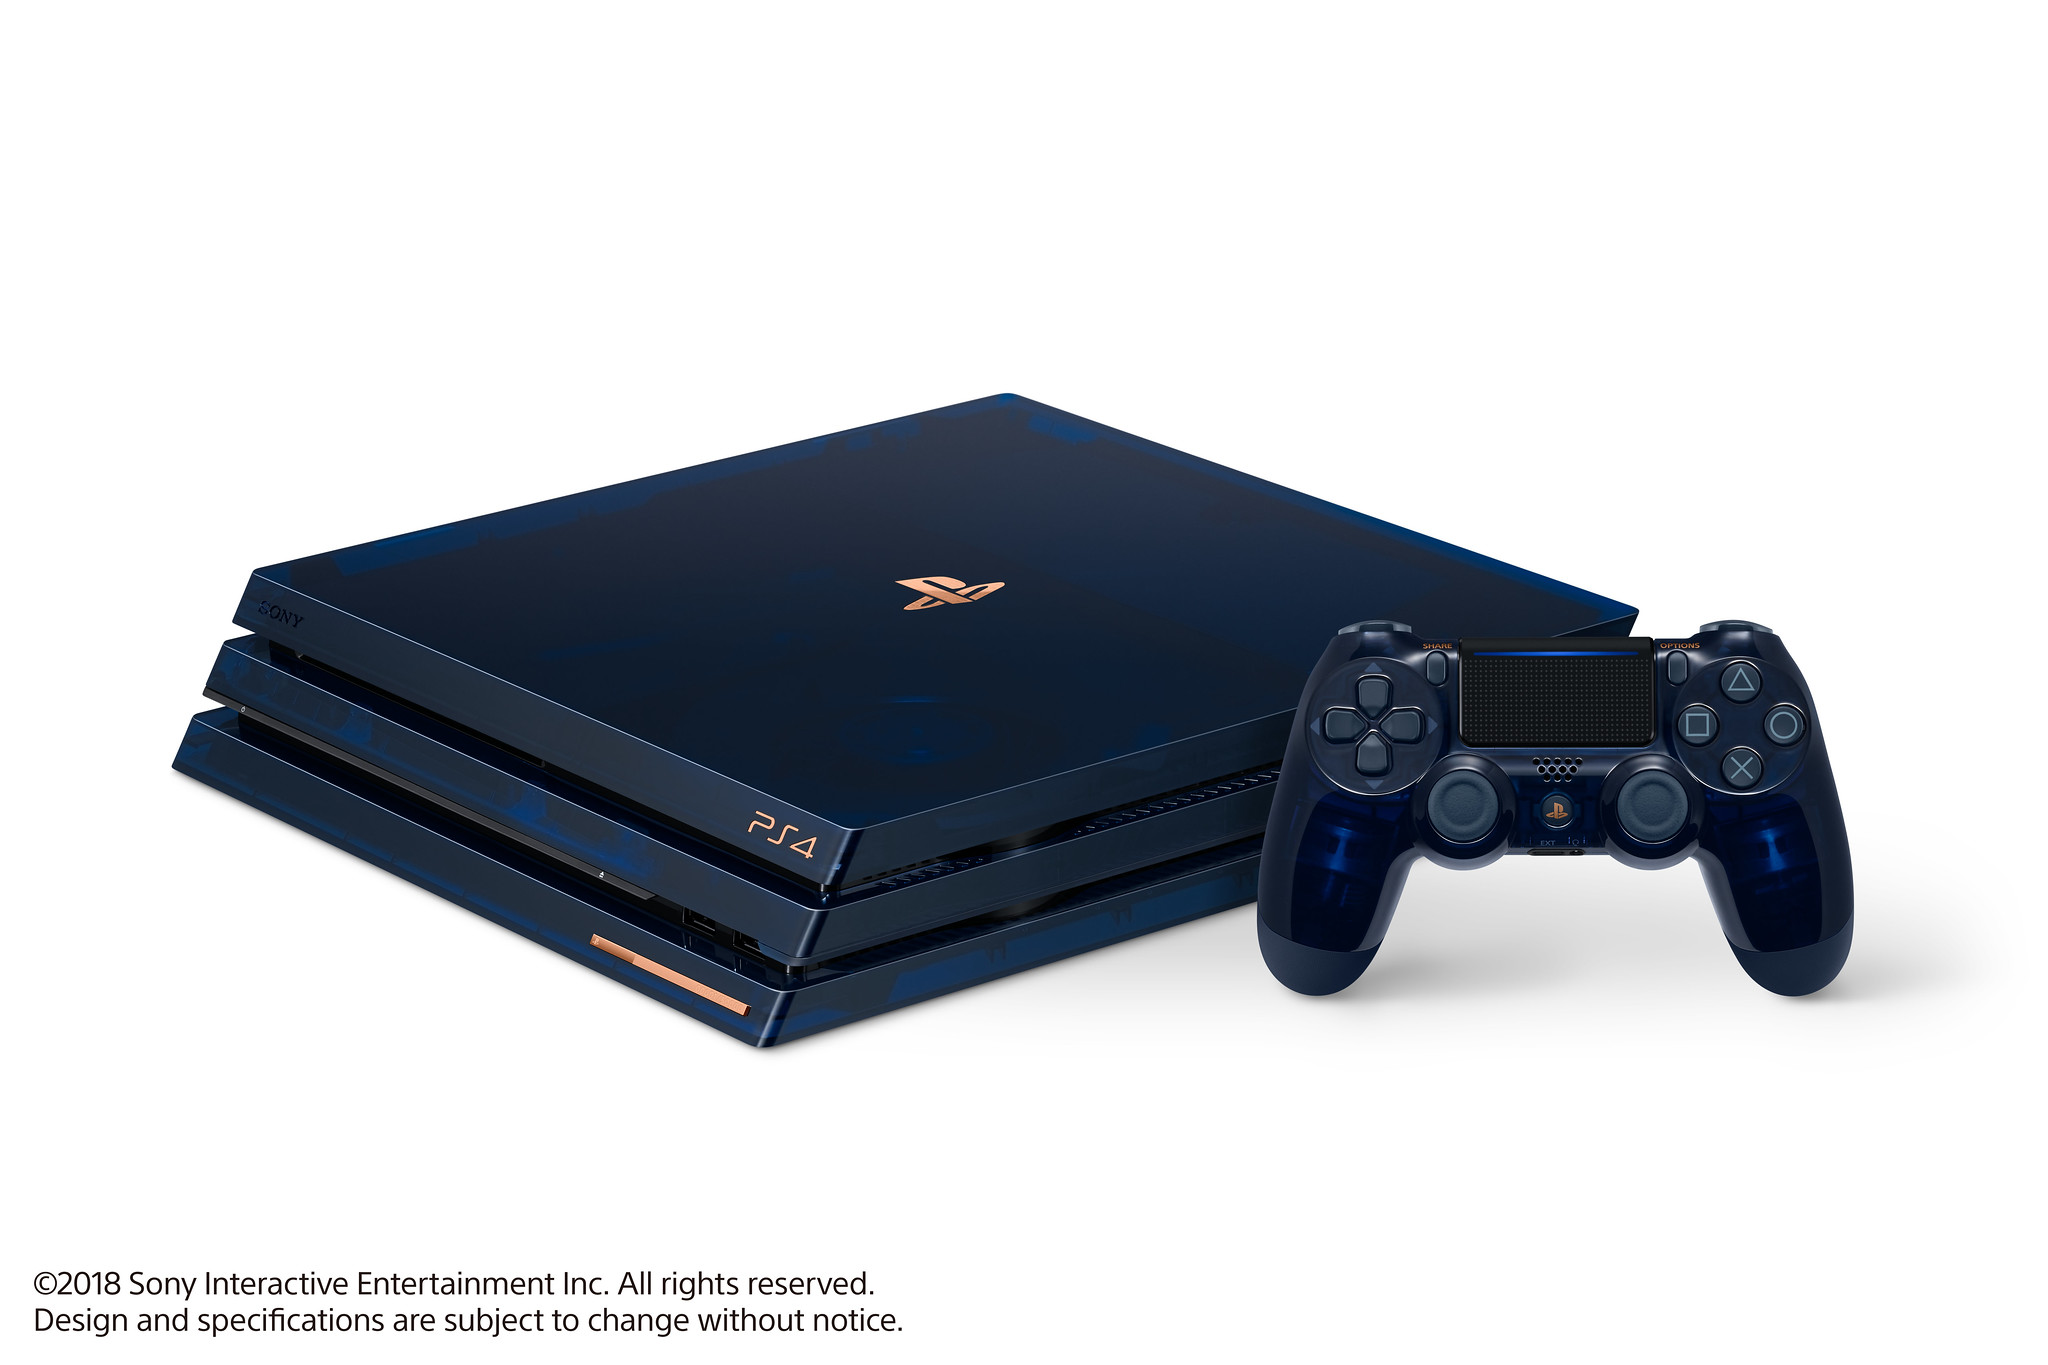 Presentamos la 500 Million Limited Edition PS4 Pro que Conmemora el Hito de 500 Millones. – PlayStation.Blog LATAM